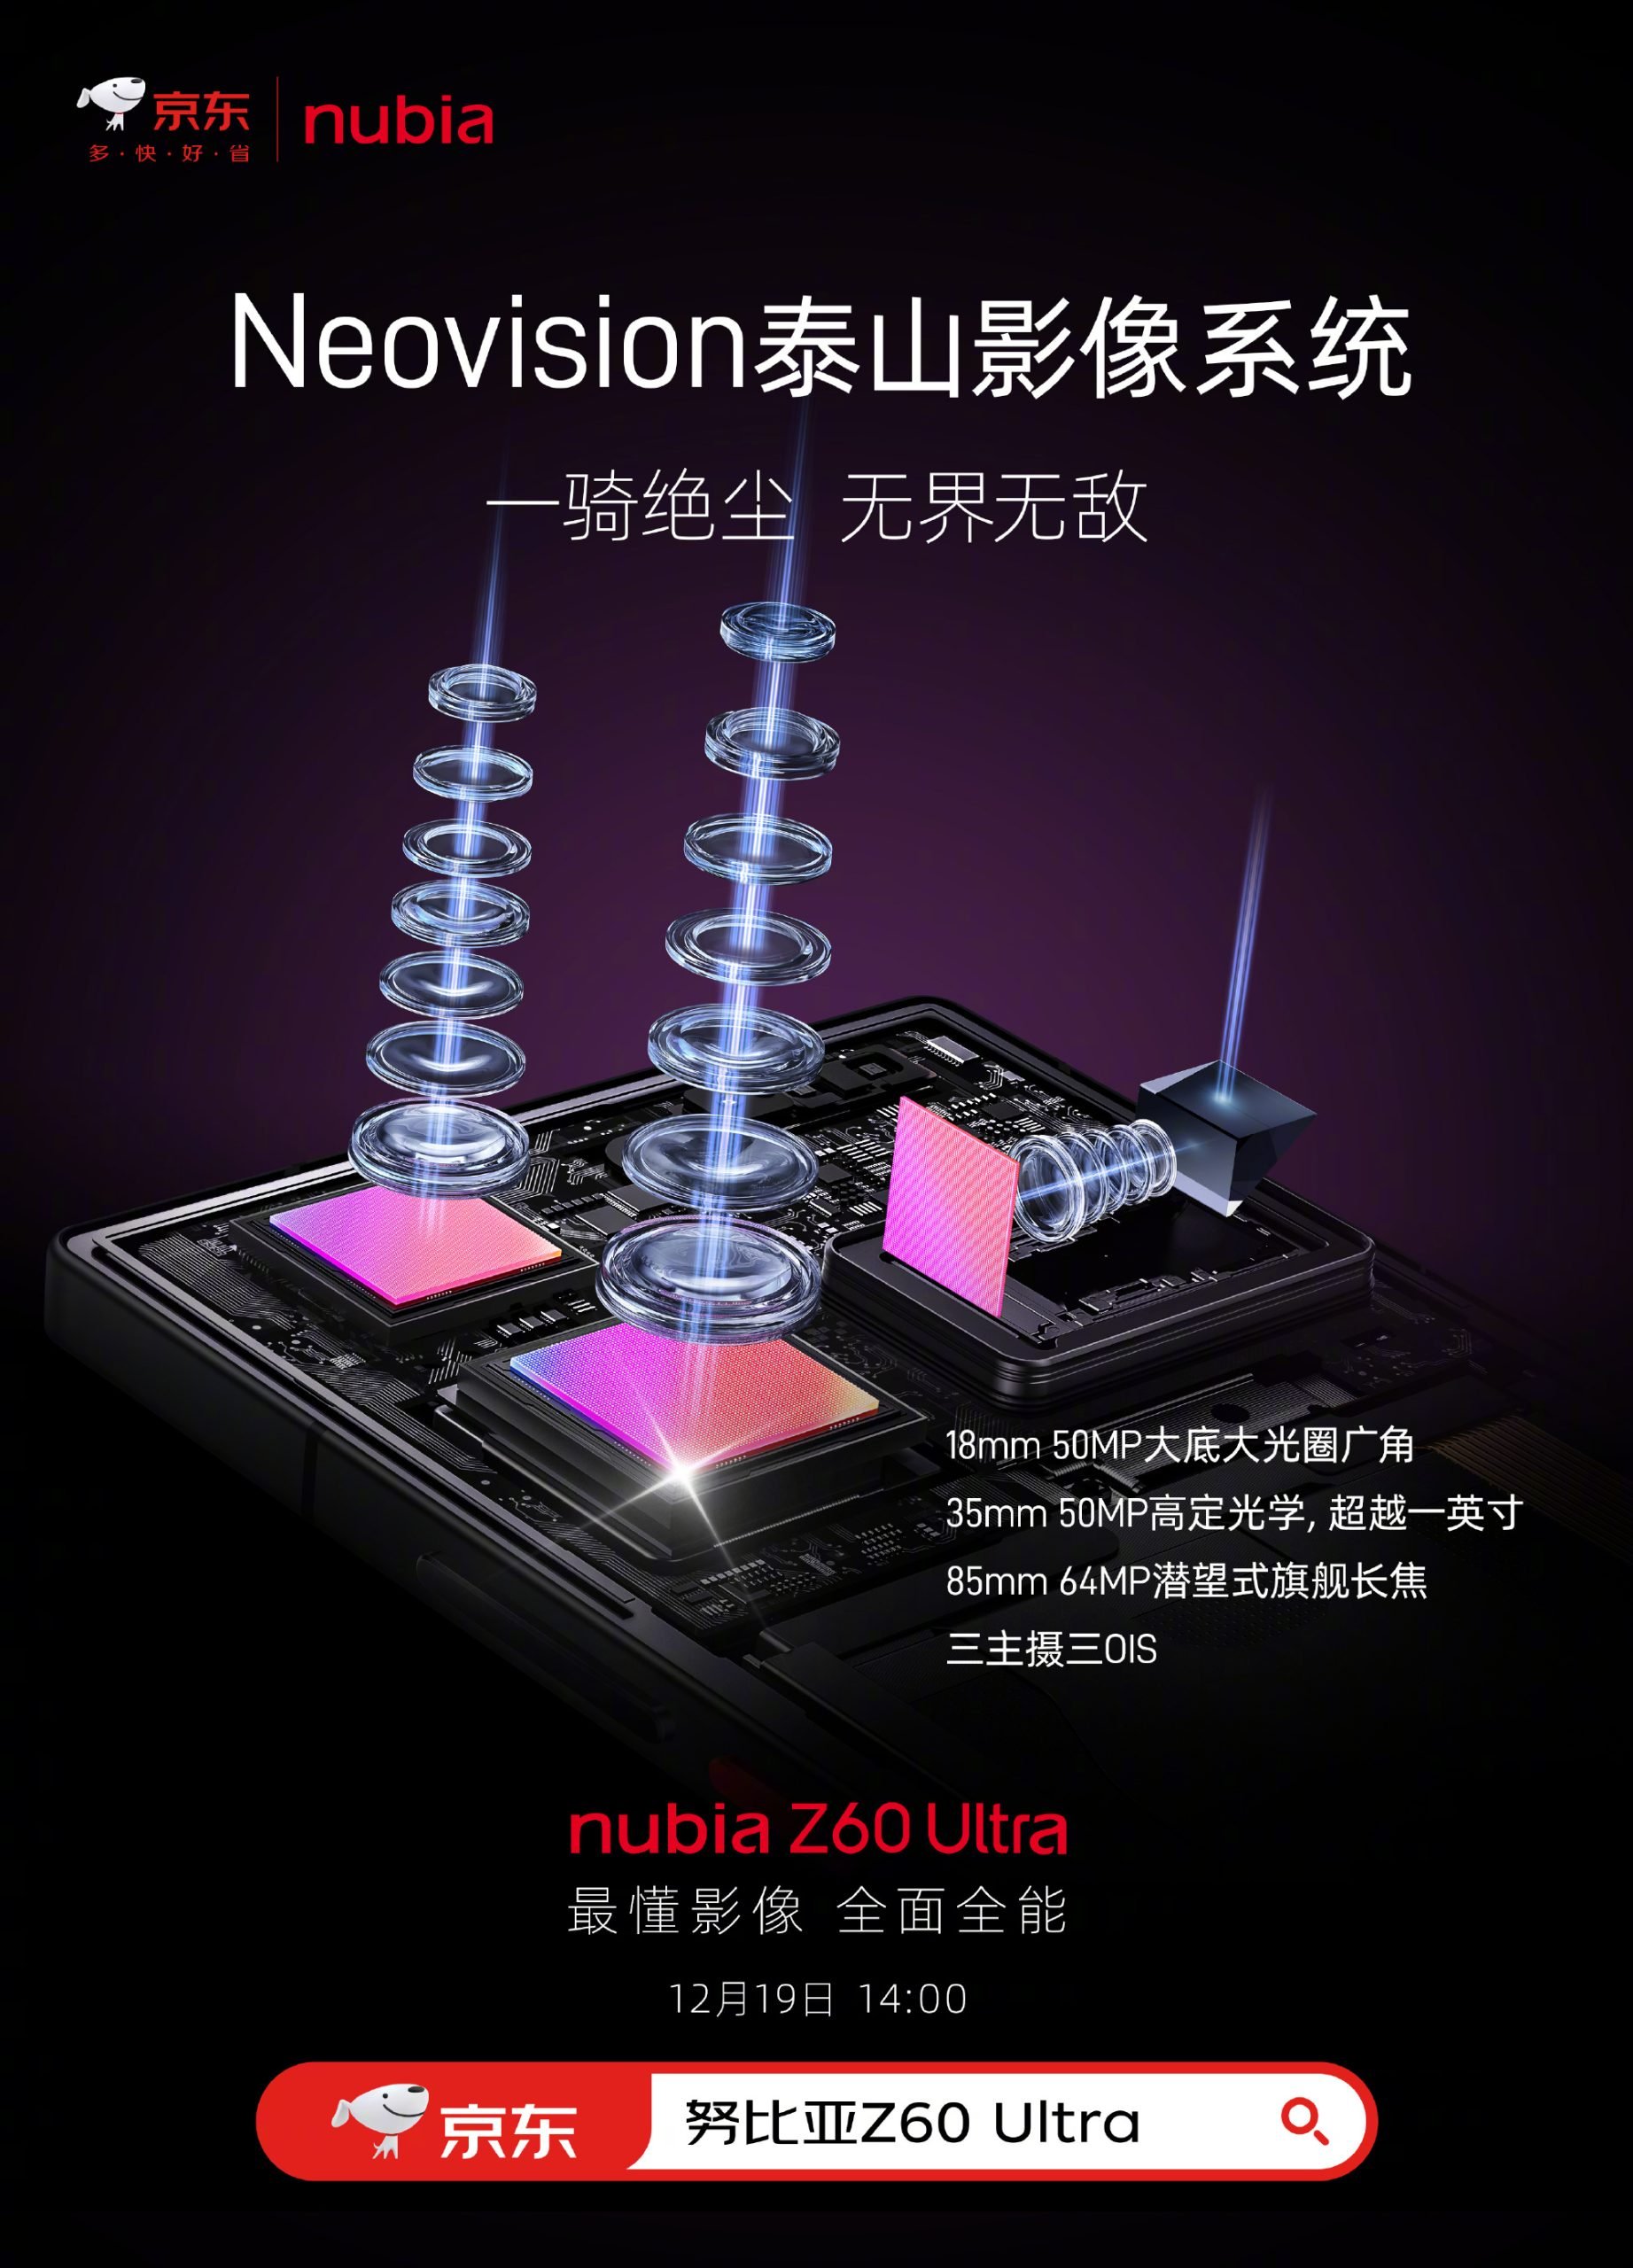 Especificaciones de la cámara del Nubia Z60 Ultra